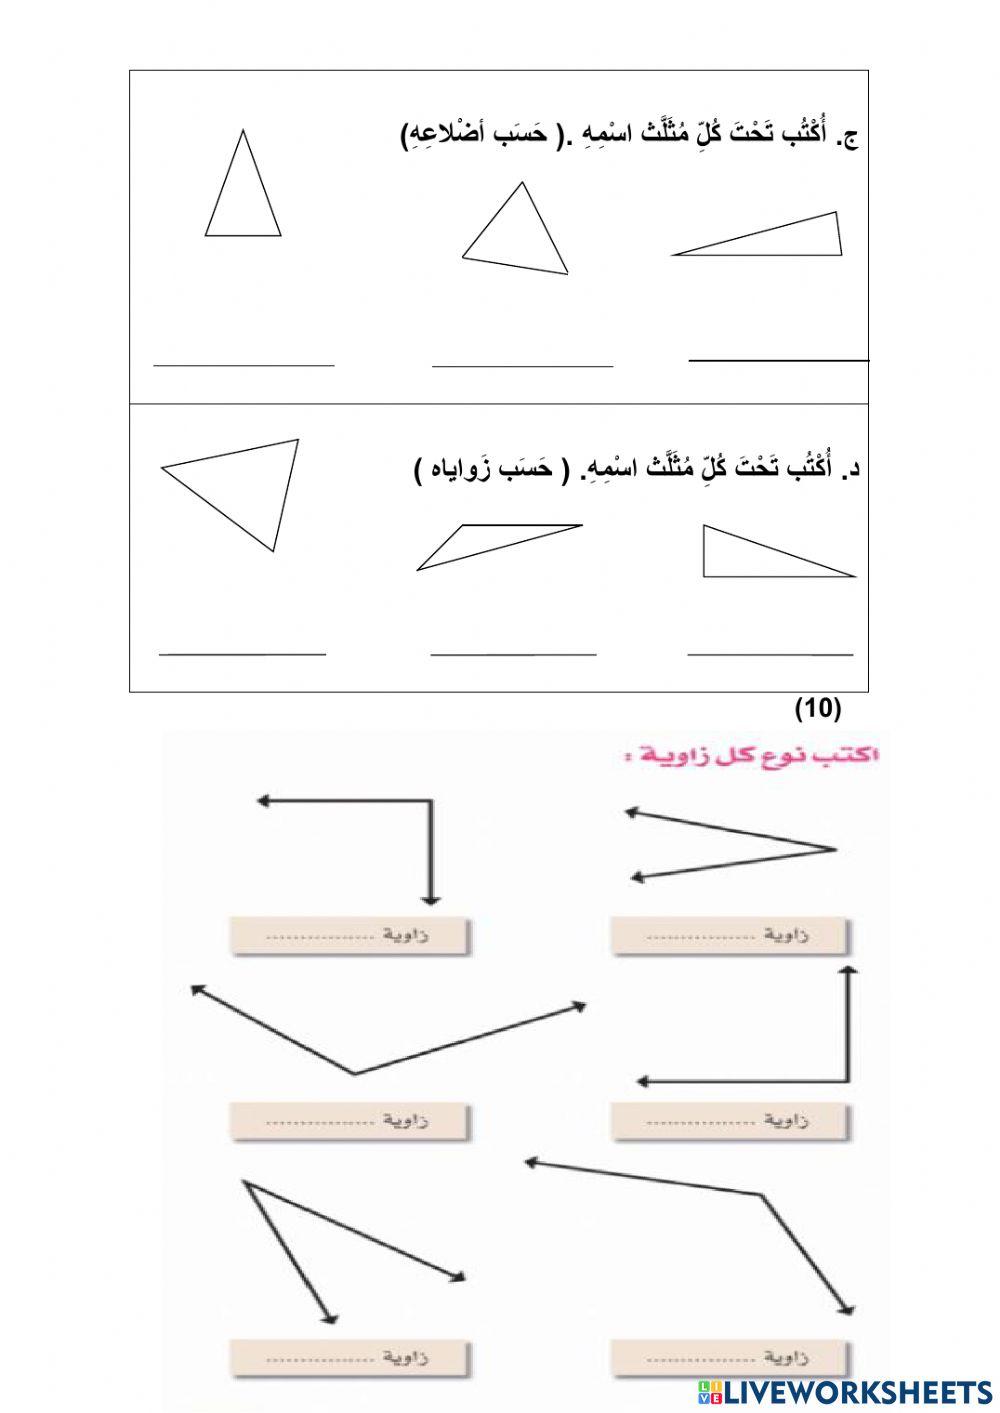 أسئلة - أنواع المثلثات - الزوايا- الخطوط المتوازية والمتعامدة